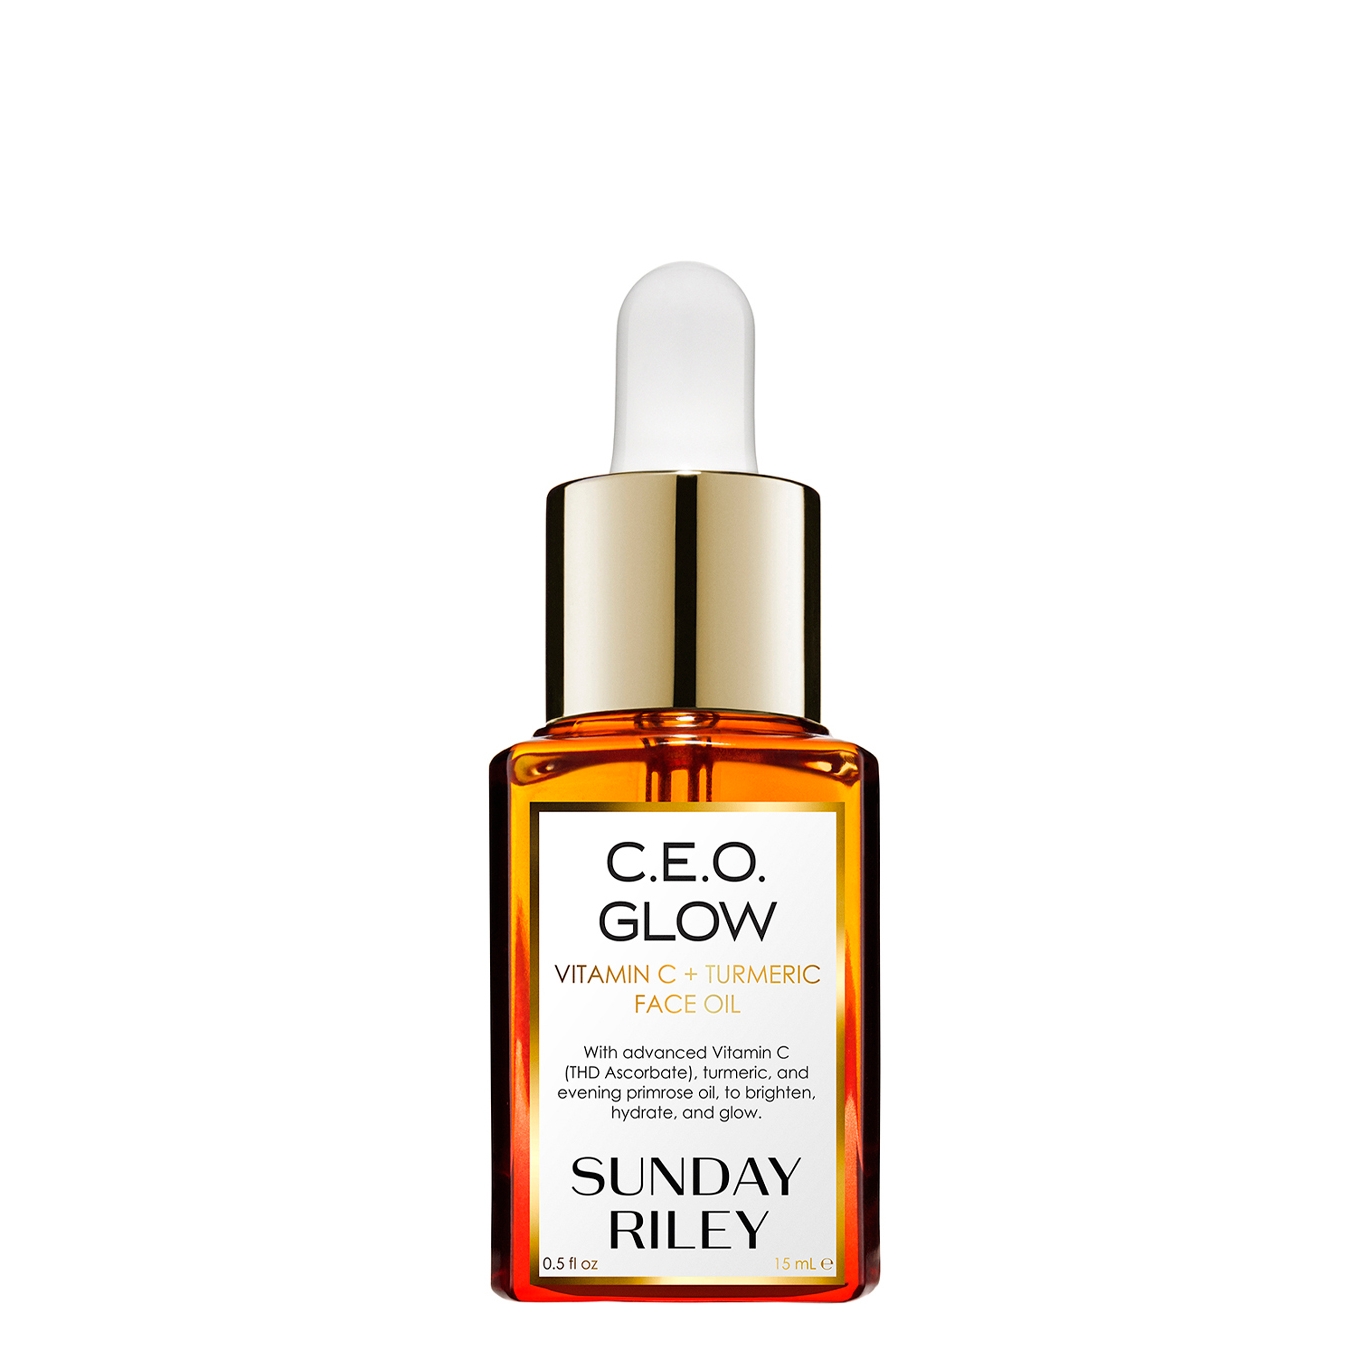 sunday riley c.e.o. glow vitamin c + turmeric face oil 15ml